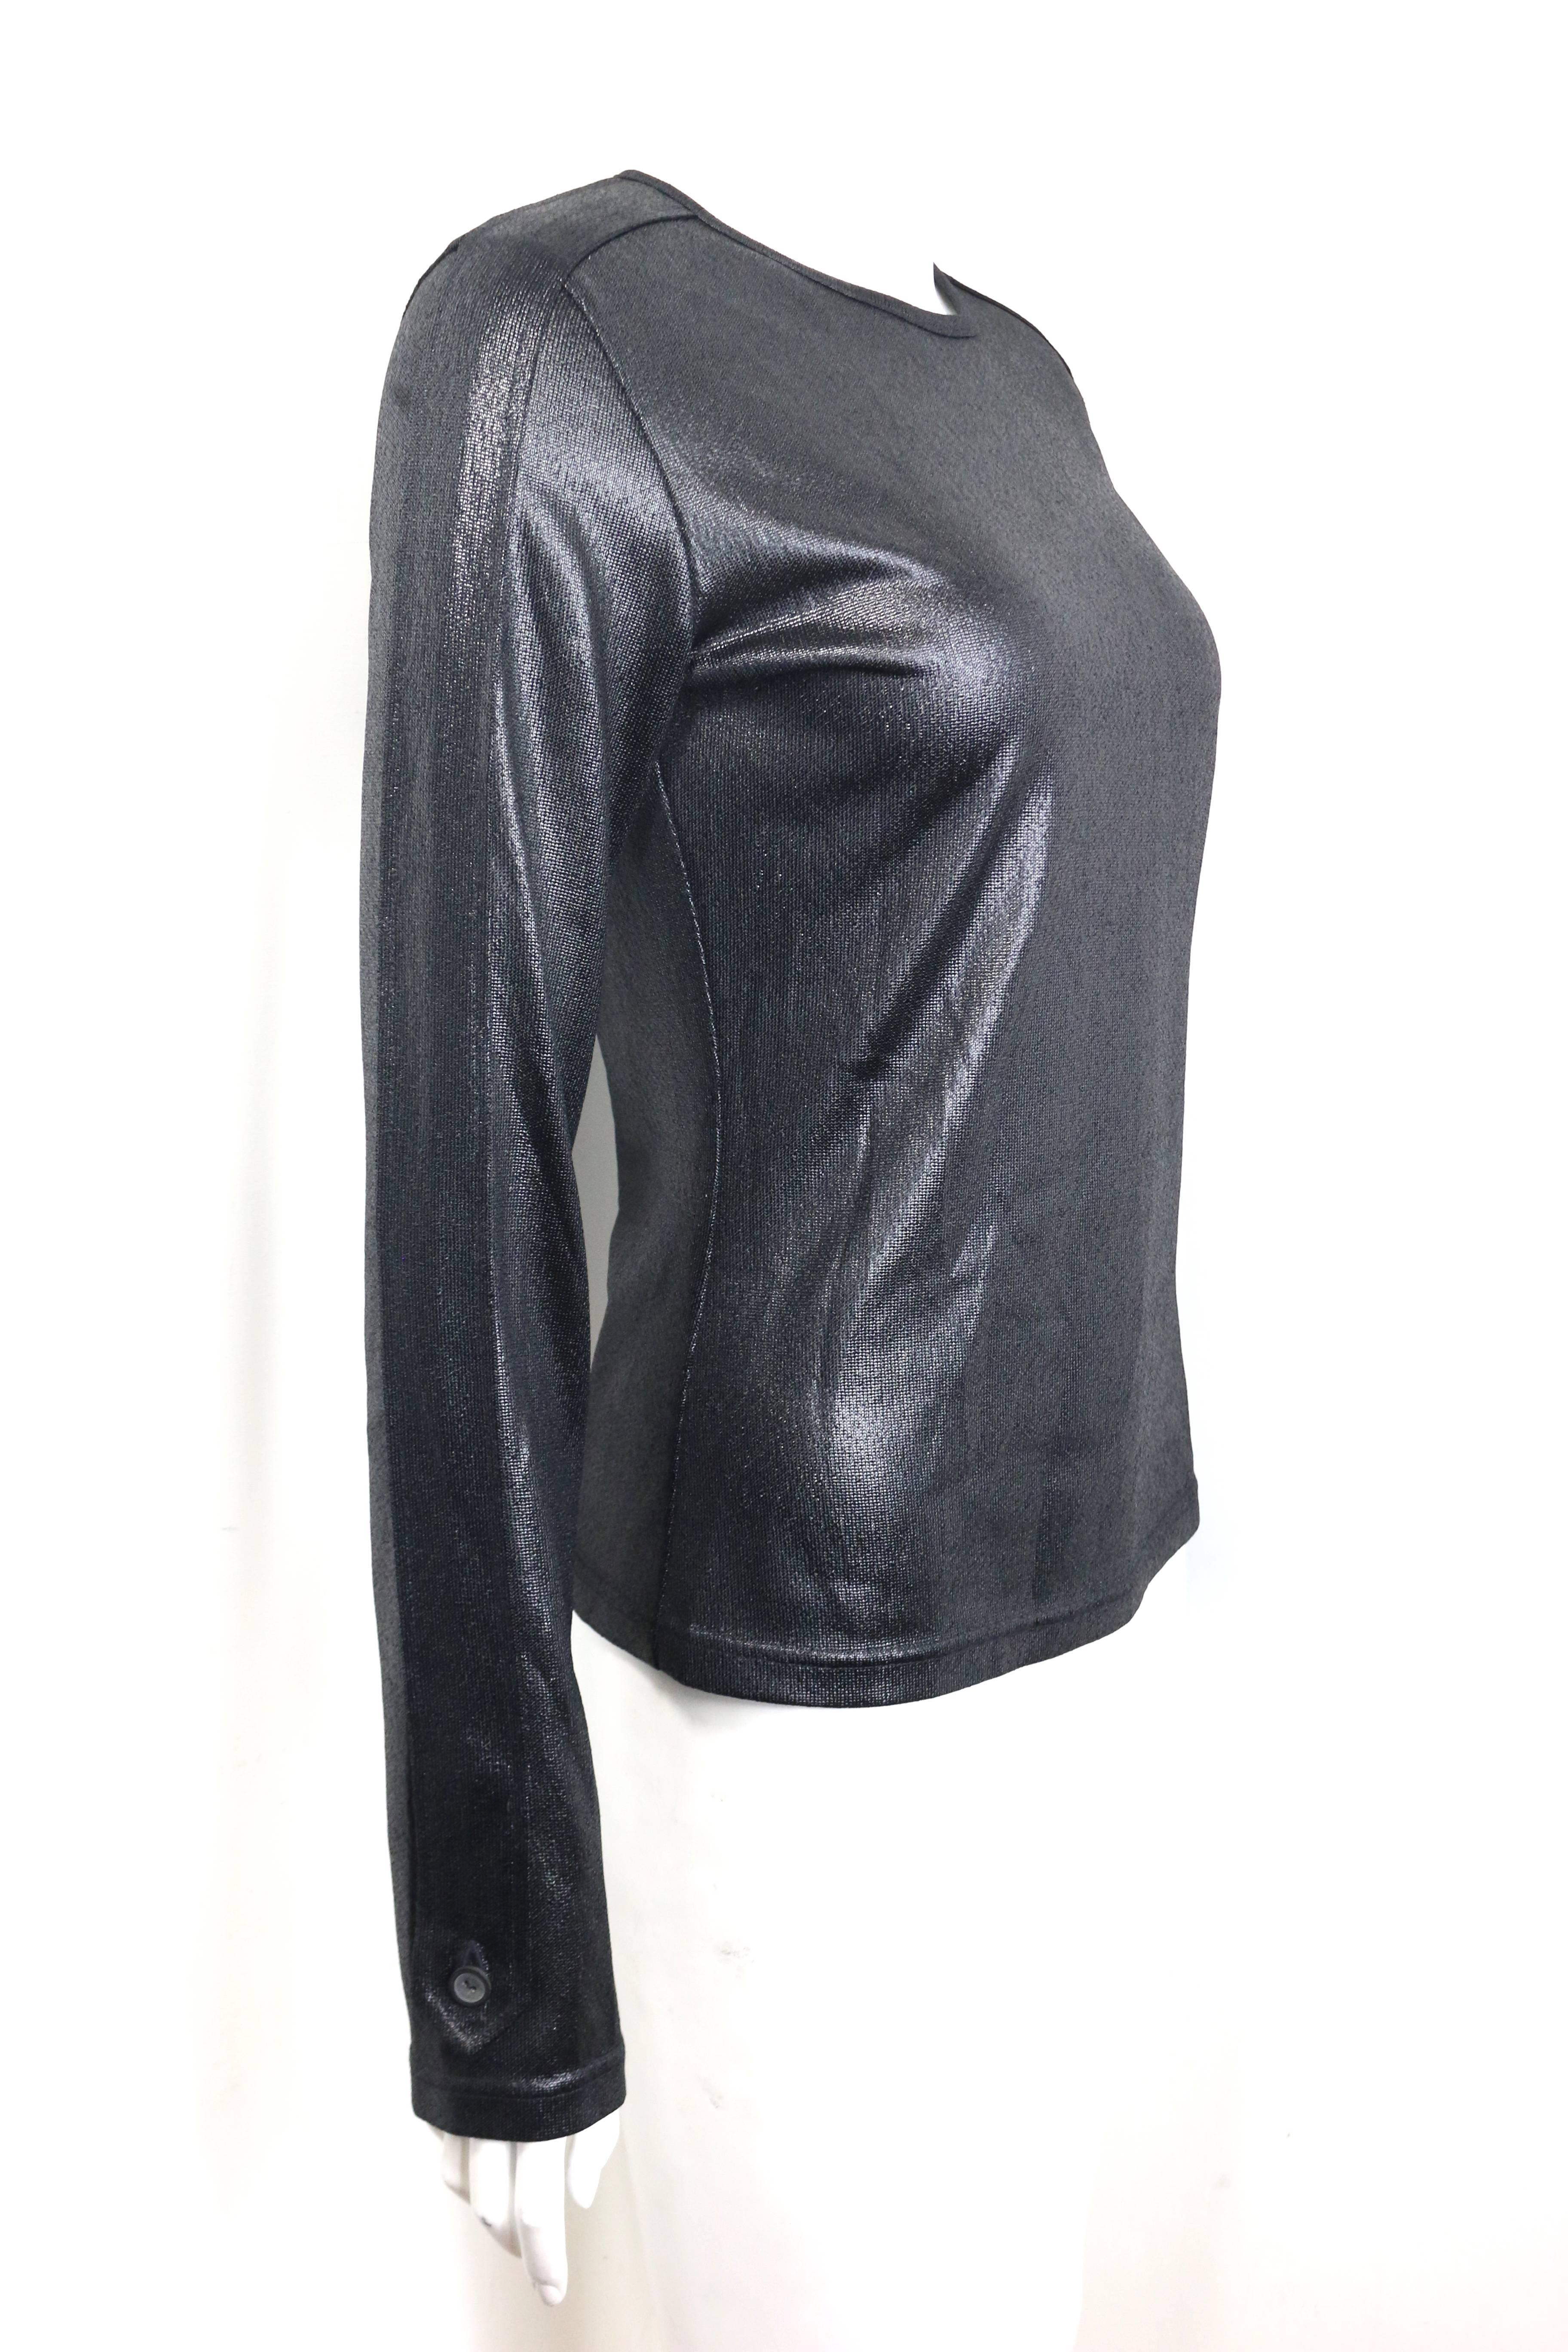 - Gucci by Tom Ford schwarzes langärmeliges Pulloveroberteil aus Polyester aus der Herbstkollektion 1996. 

- Knopfleiste an der Seite der Ärmel. 

- Größe 44. 

- 100% Polyester. 

